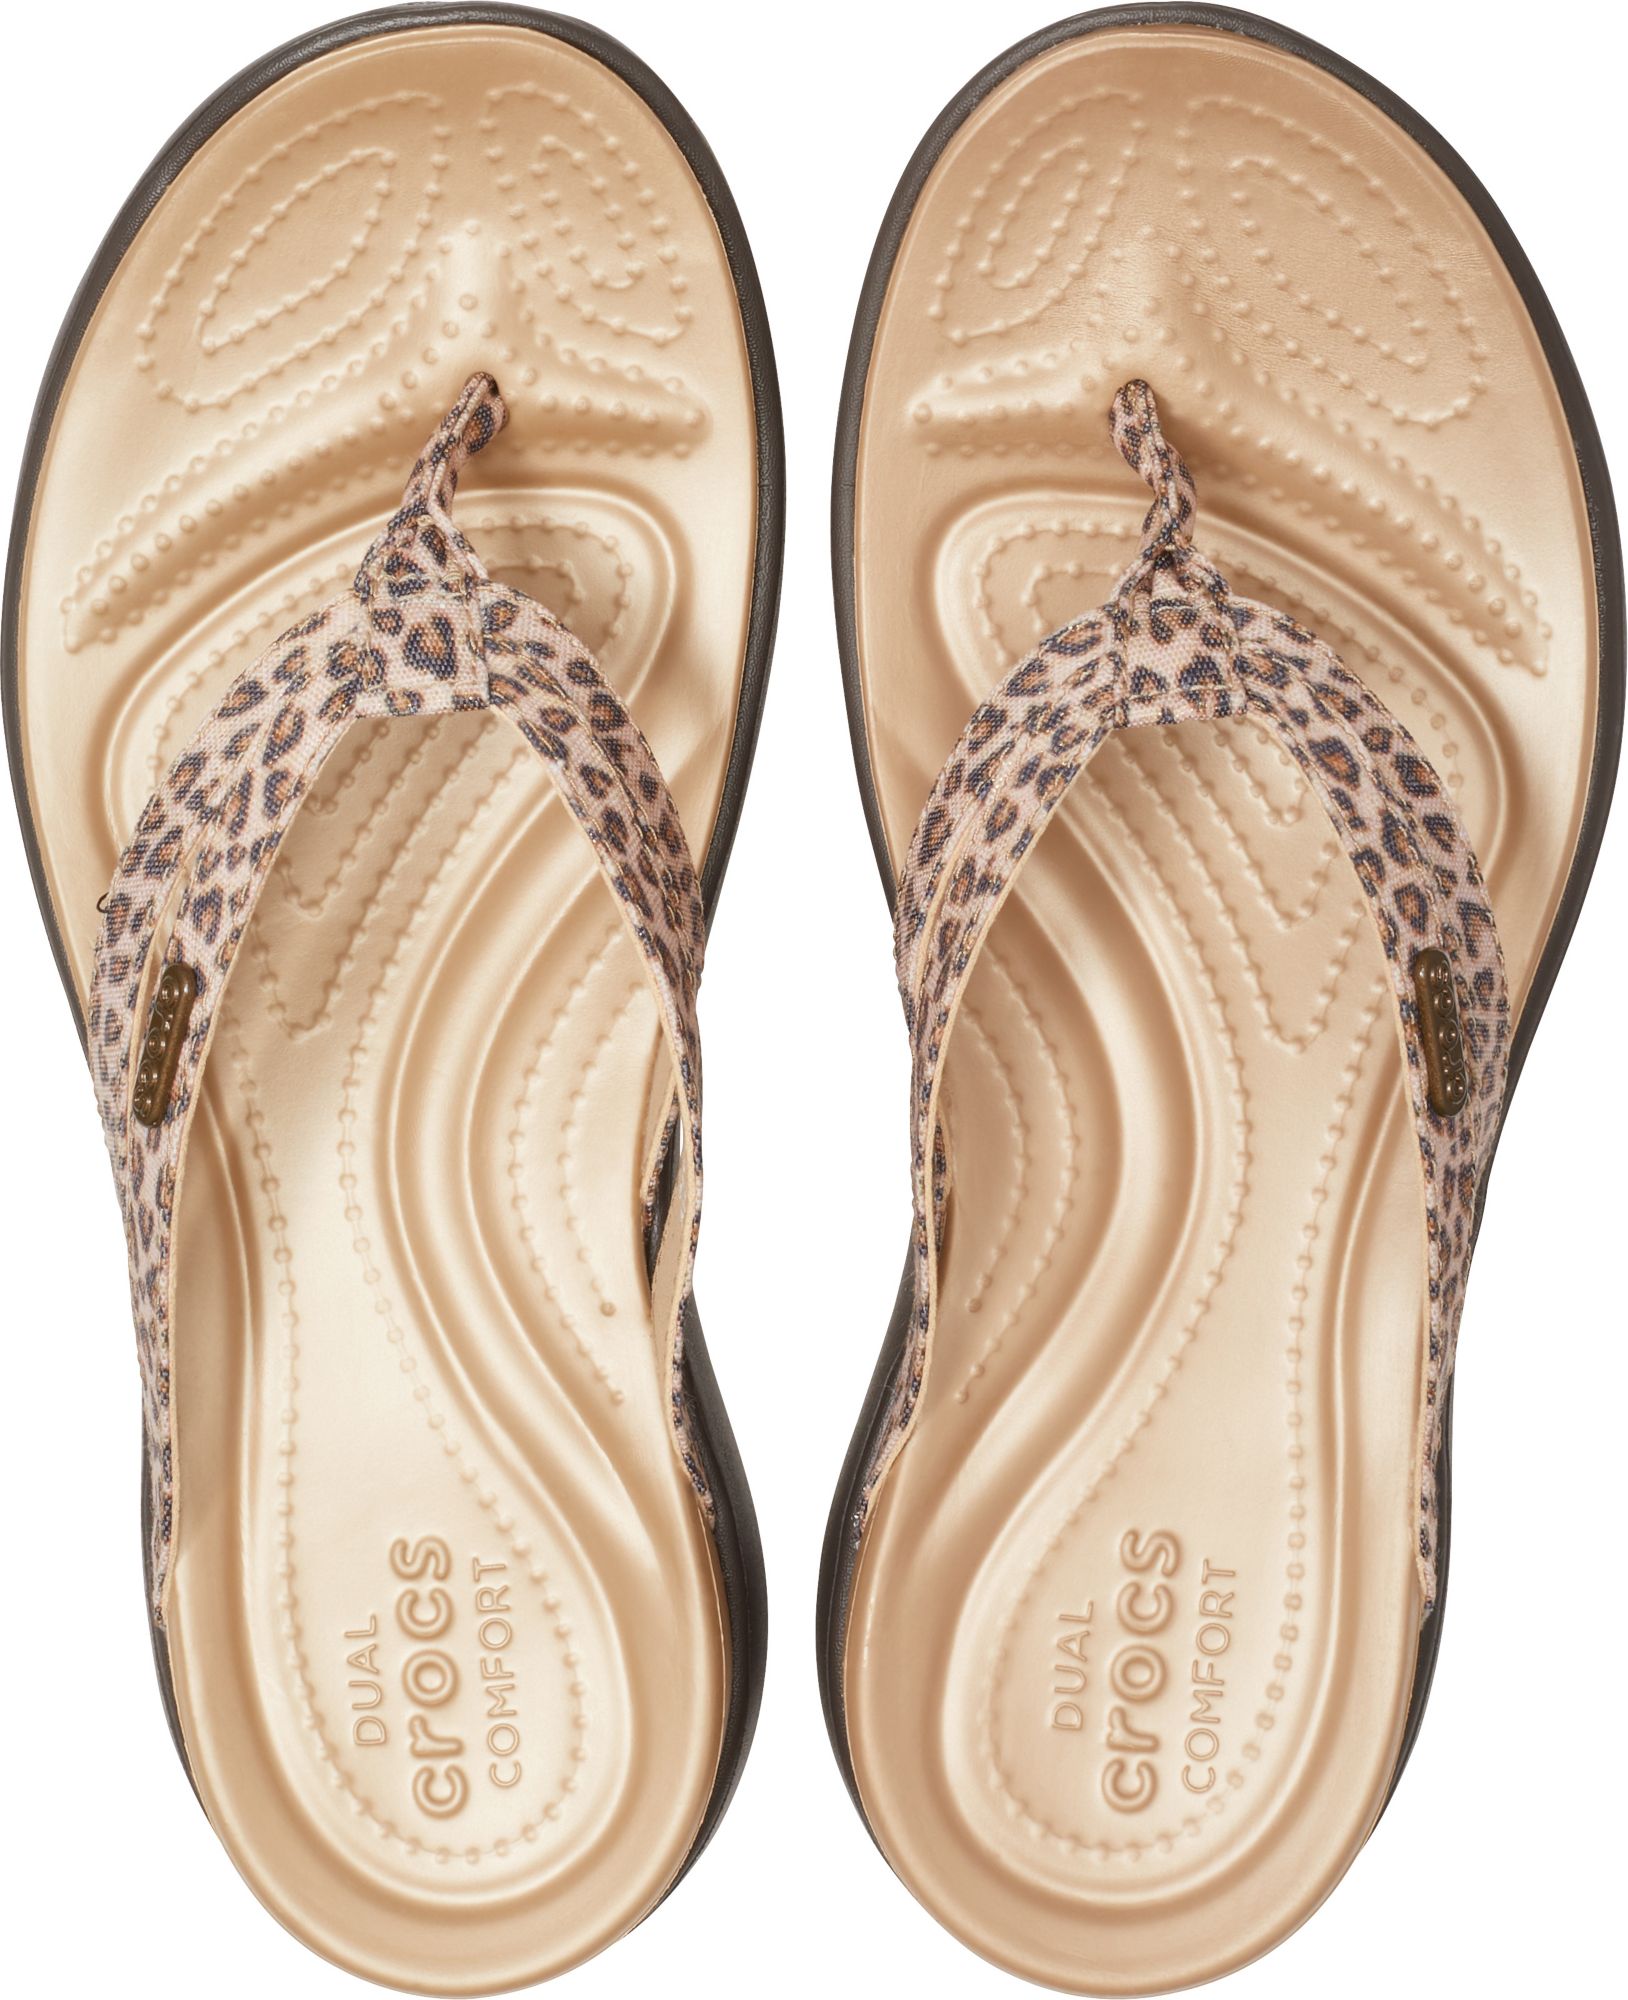 crocs leopard sandals